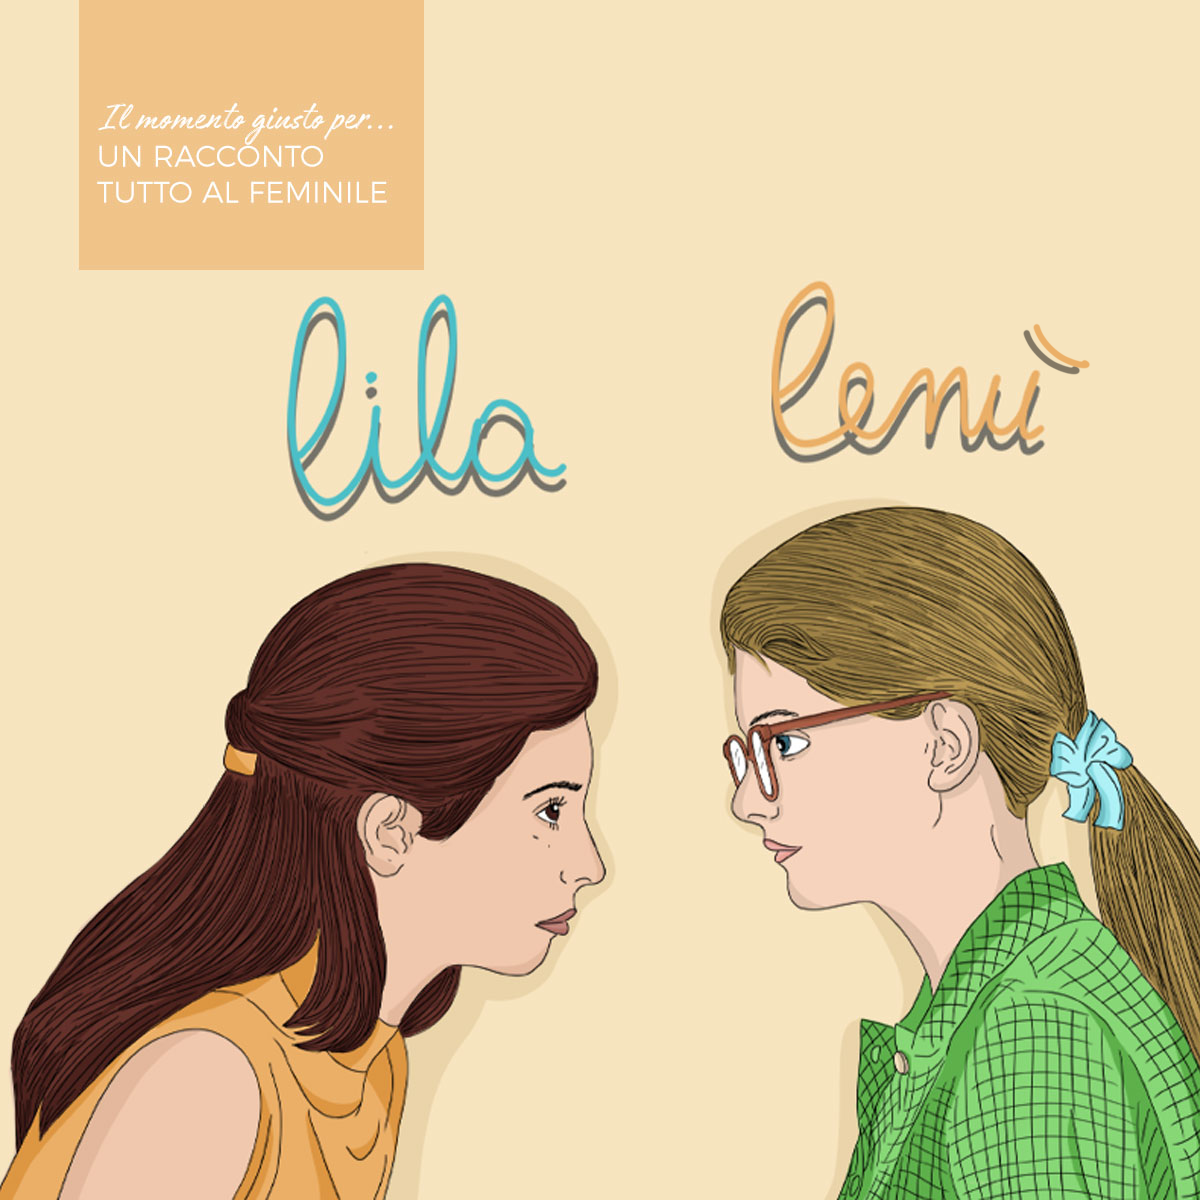 Illustrazione che ritrae Lila e Lenù, le due protagoniste televisive de L'amica Geniale